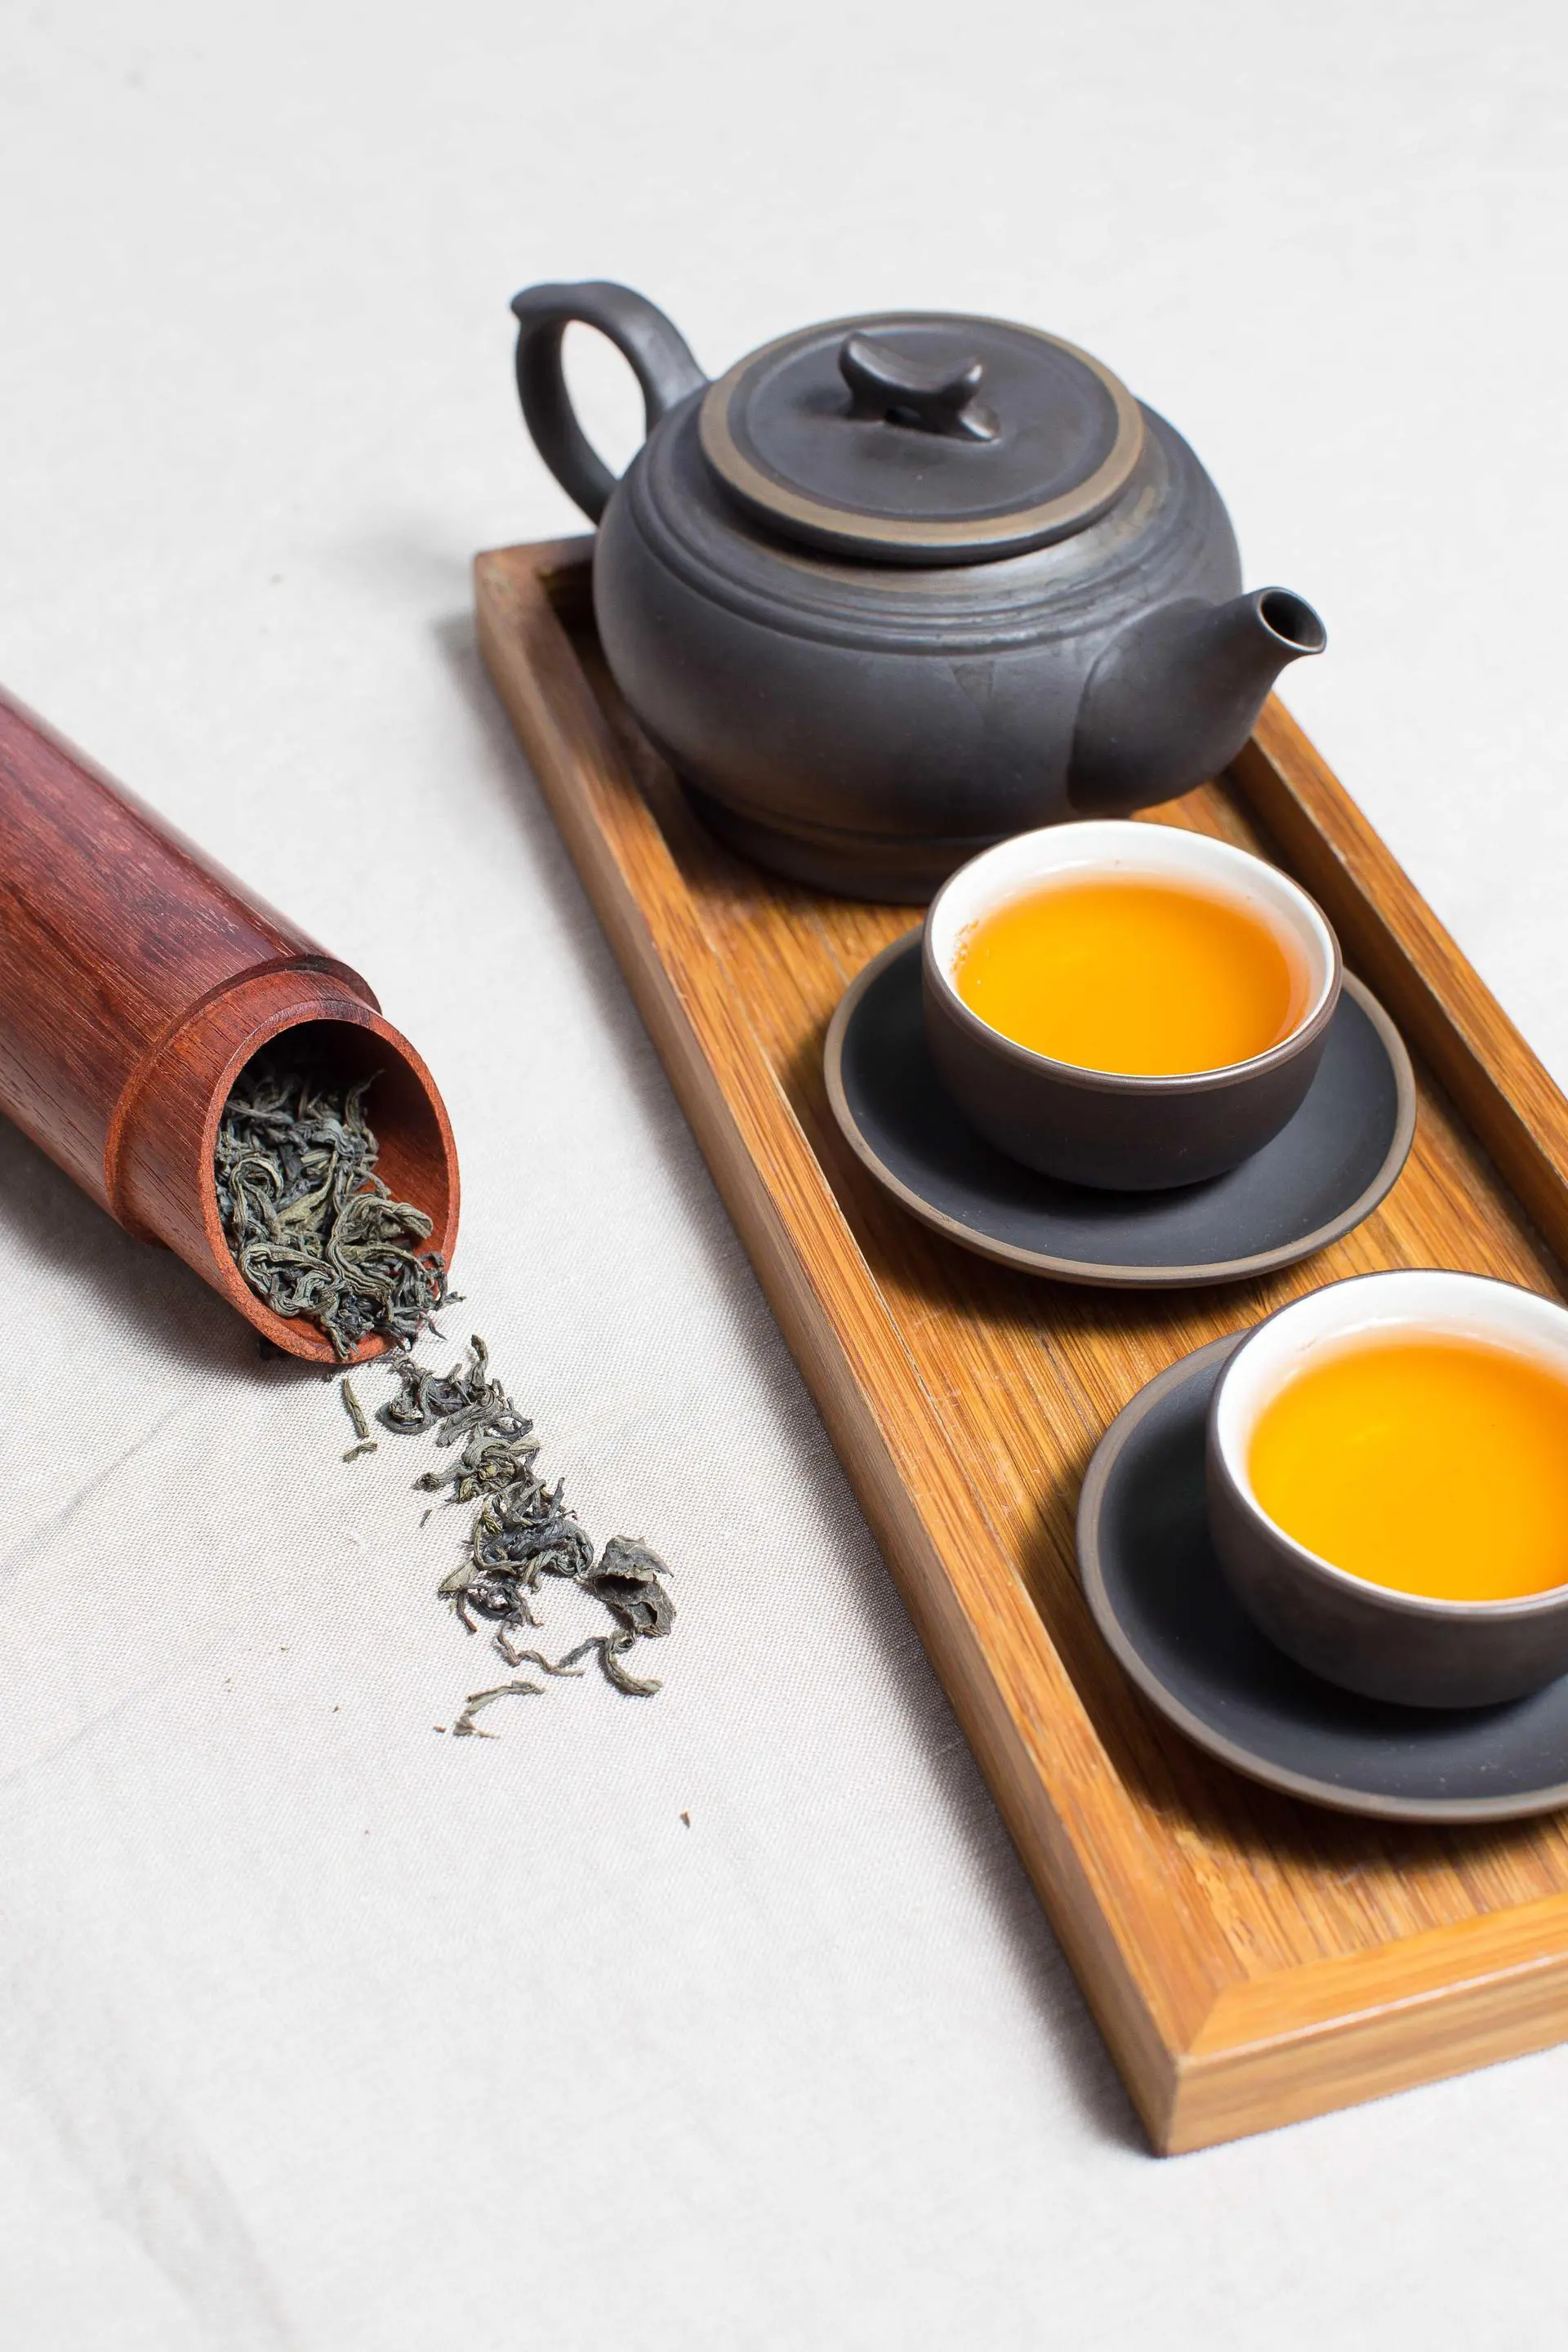 Nouvelle tendance consommation : « le thé bio a toutes les vertus